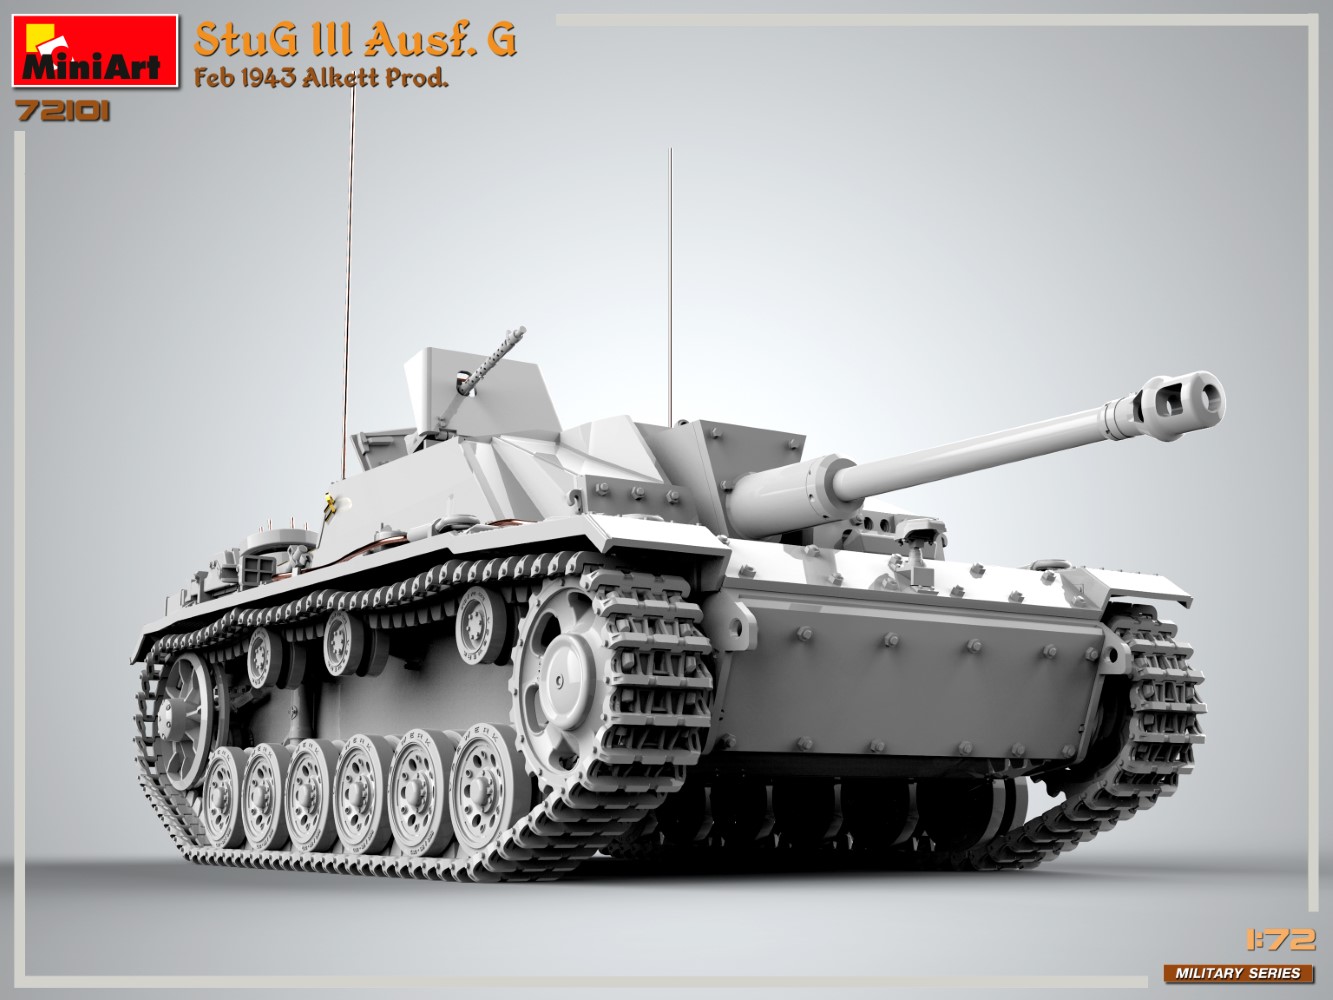 【予約する】　1/72　Ⅲ号突撃砲Ausf.G アルケット社製 1943年2月